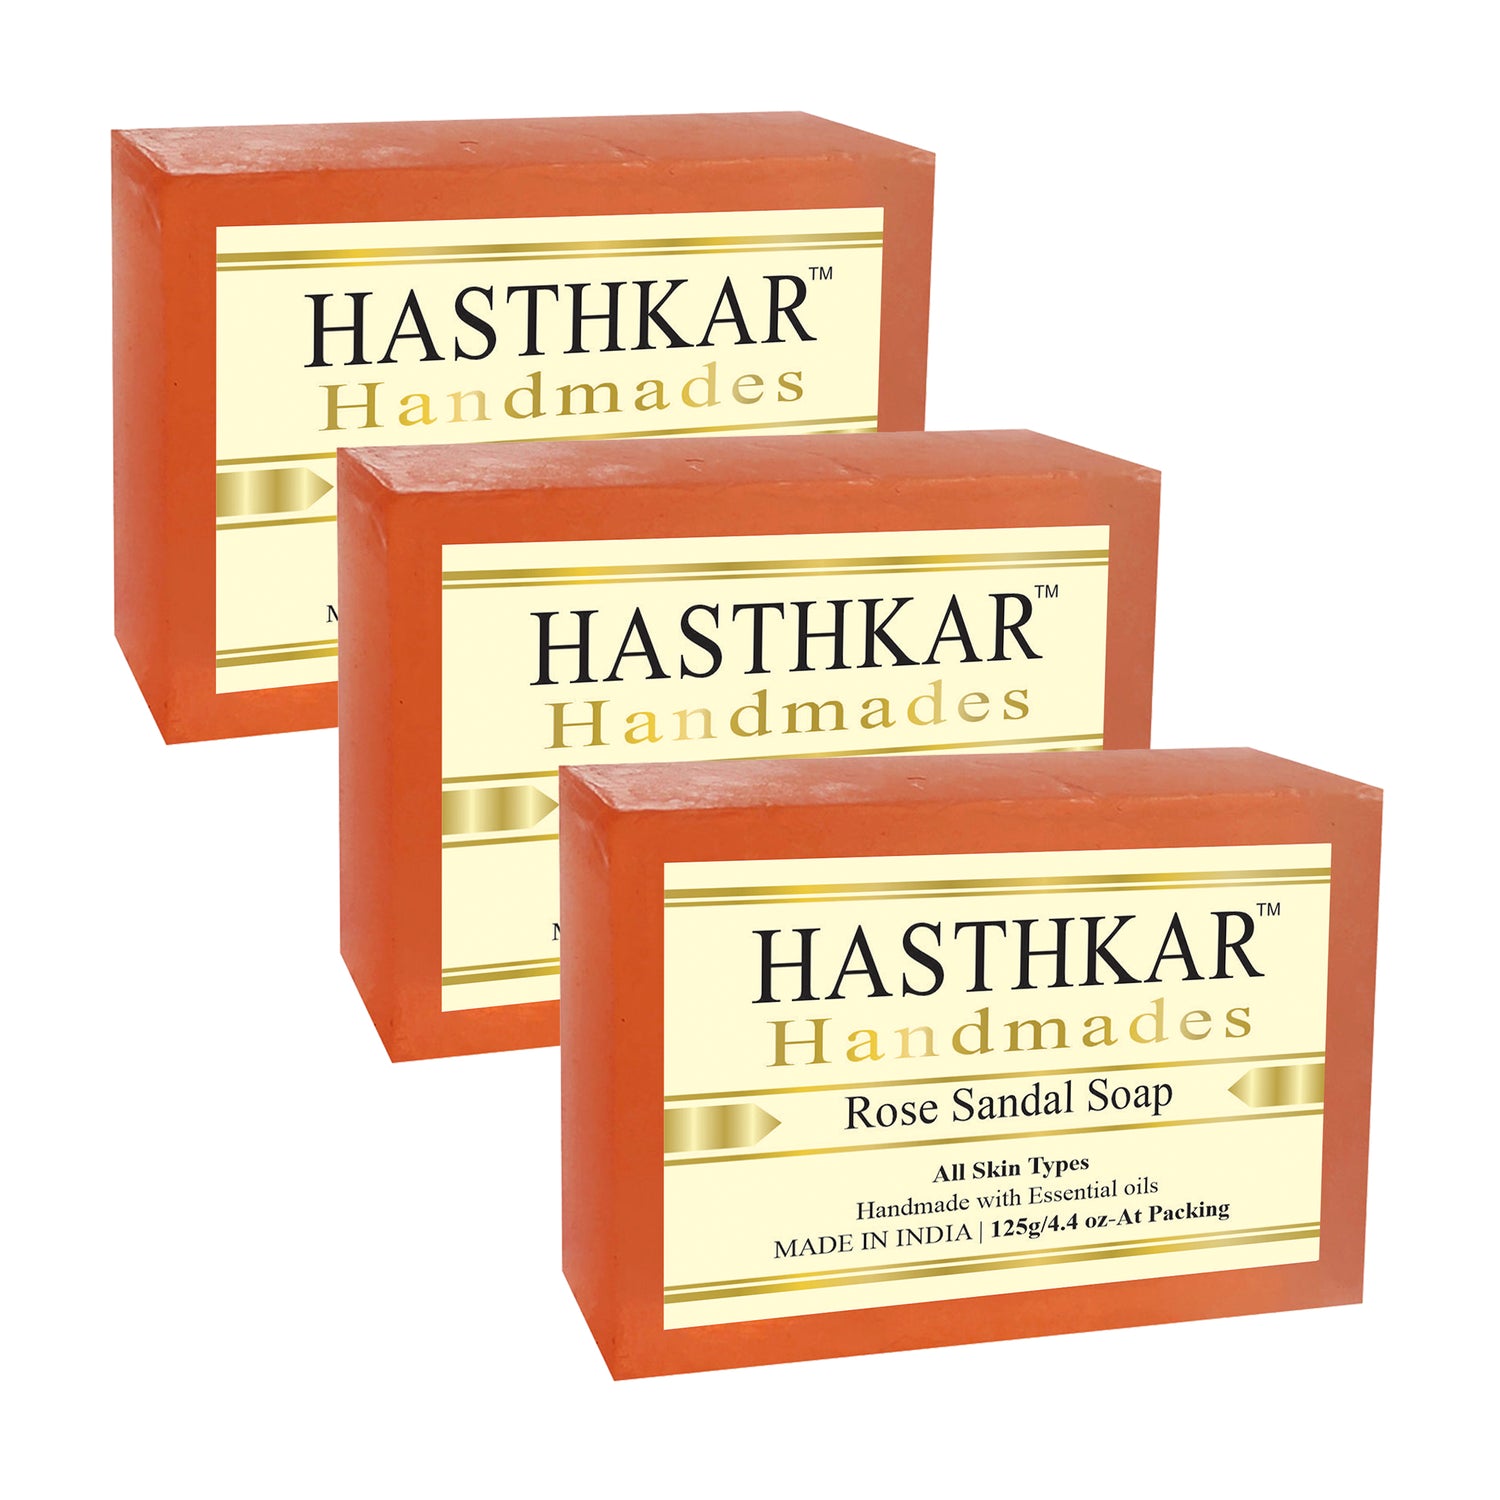 Hasthkar handmades rose sandal bathing soap men and women pack of 3